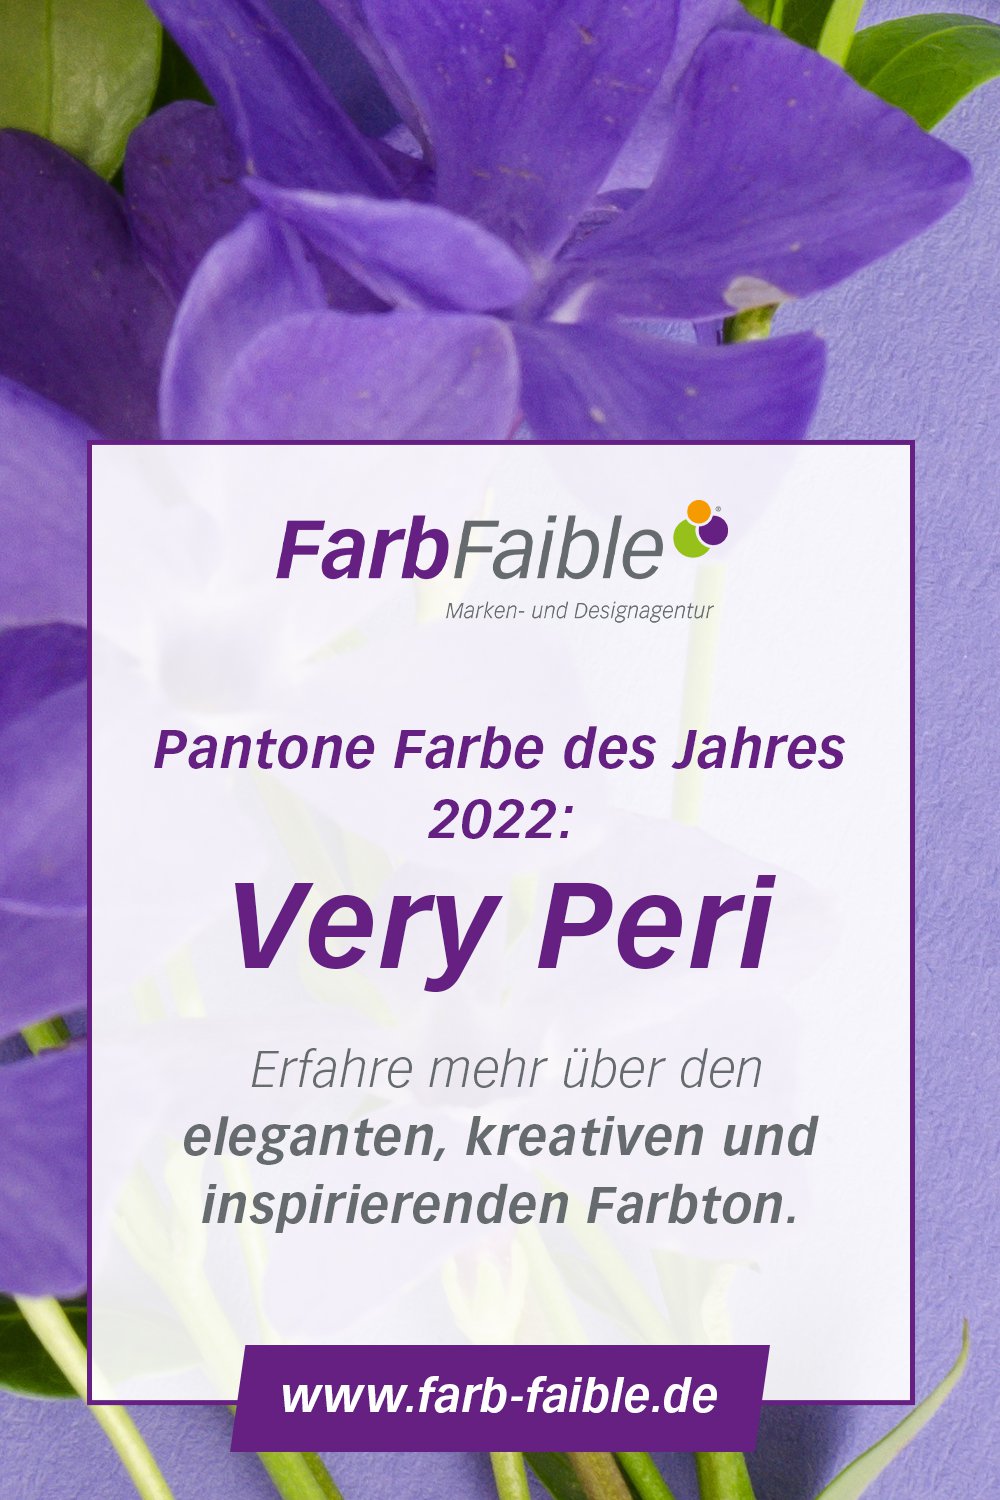 Pantone Farbe des Jahres 2022 Very Peri - ein eleganter, kreativer und inspirierender Farbton